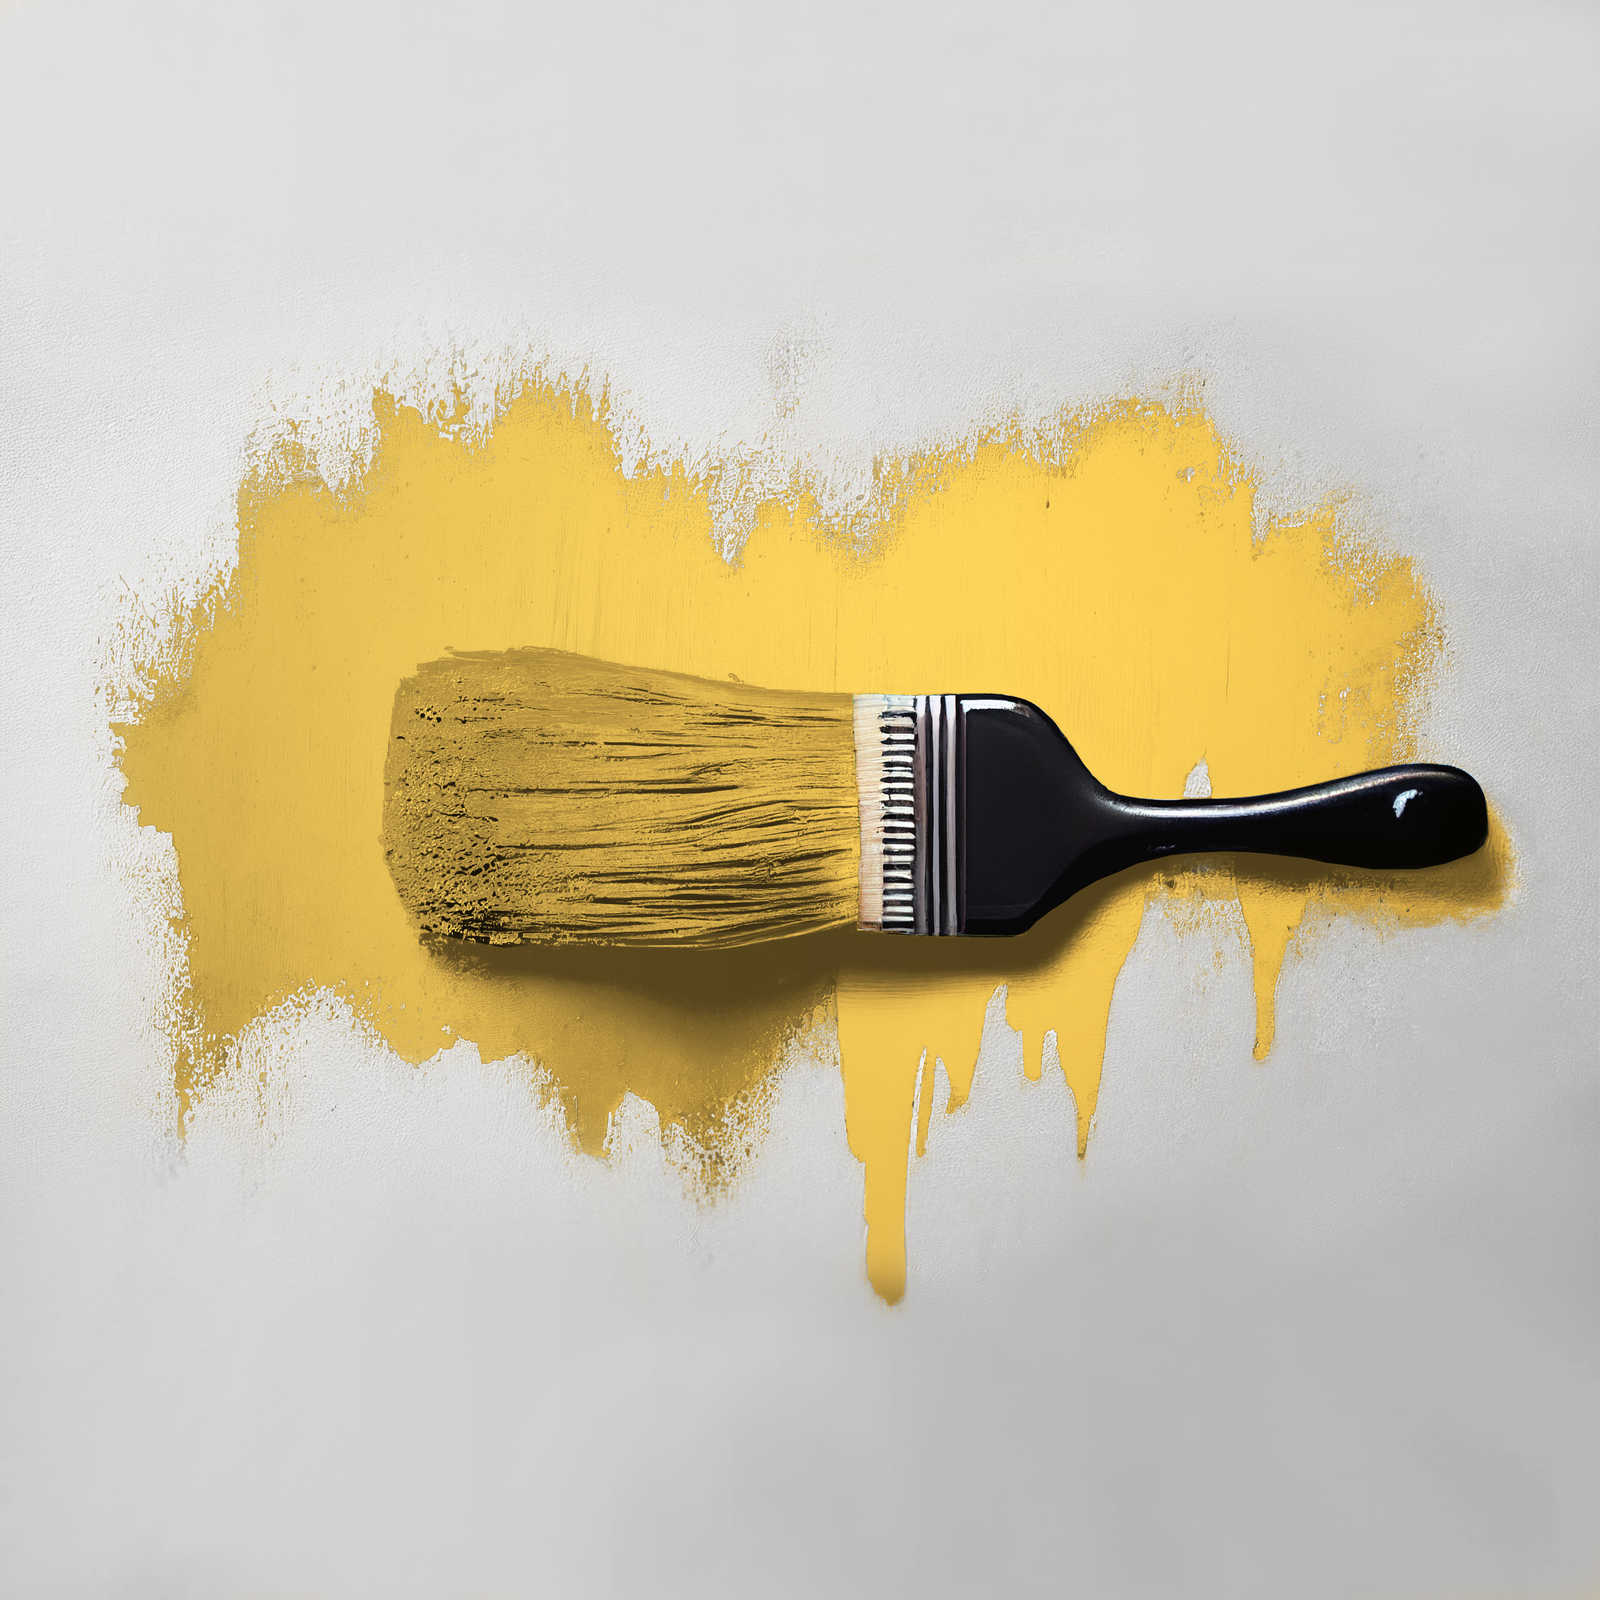             Peinture murale TCK5003 »Mighty Mango« en jaune vif – 2,5 litres
        